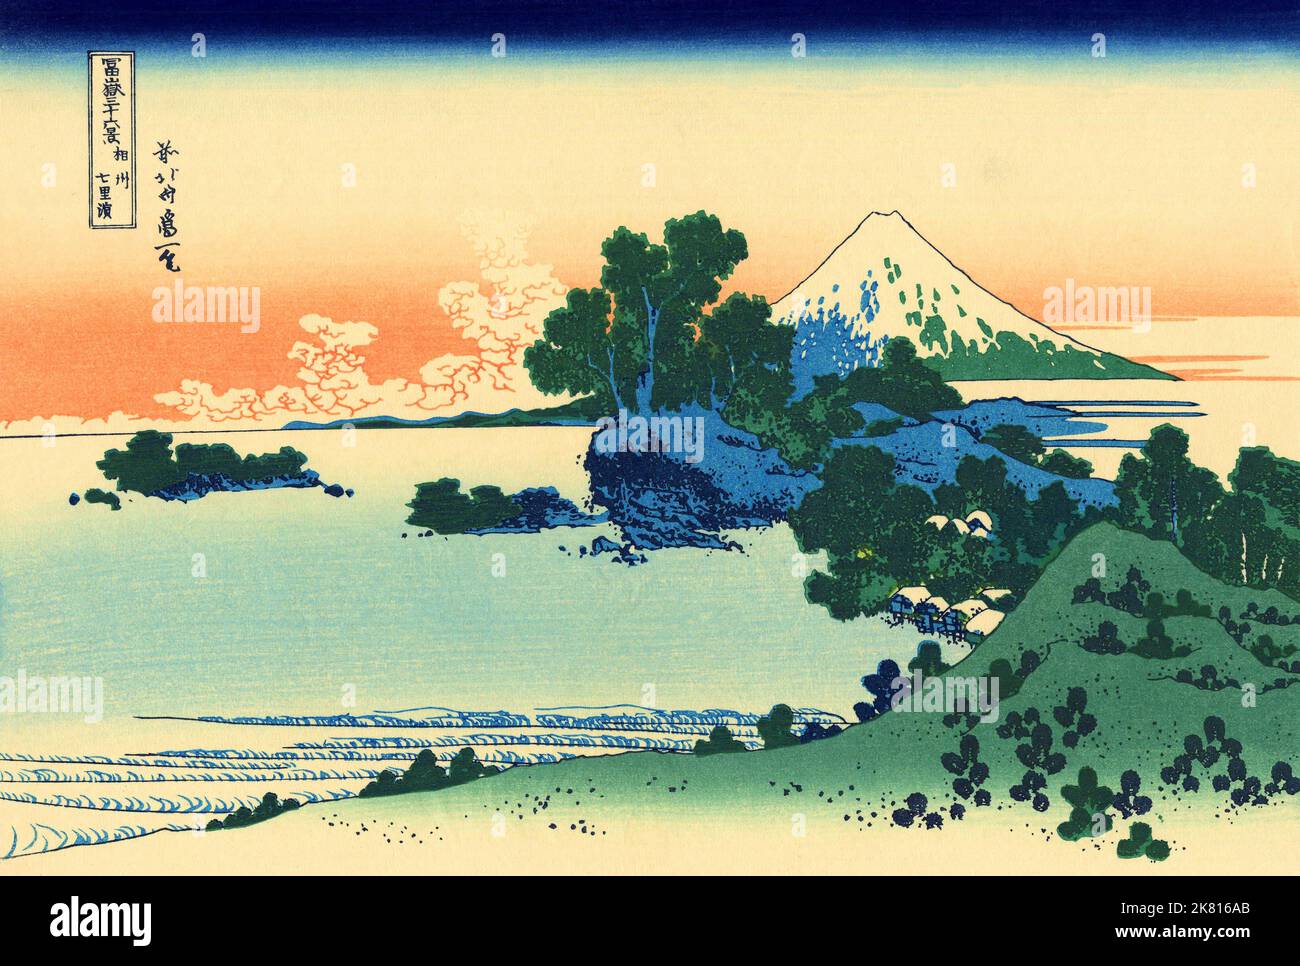 Giappone: «Spiaggia di Shichiri nella provincia di Sagami». Ukiyo-e stampa in blocco della serie «trentasei viste del Monte Fuji» di Katsushika Hokusai (31 ottobre 1760 - 10 maggio 1849), c.. 1830. «36 viste del Monte Fuji» è una serie di grandi stampe a blocchi di legno realizzate dall’artista Katsushika Hokusai. La serie raffigura il Monte Fuji in stagioni e condizioni meteorologiche diverse da una varietà di luoghi e distanze. Si compone di 46 stampe create tra il 1826 e il 1833. I primi 36 sono stati inclusi nella pubblicazione originale e, per la loro popolarità, altri 10 sono stati aggiunti in seguito. Foto Stock